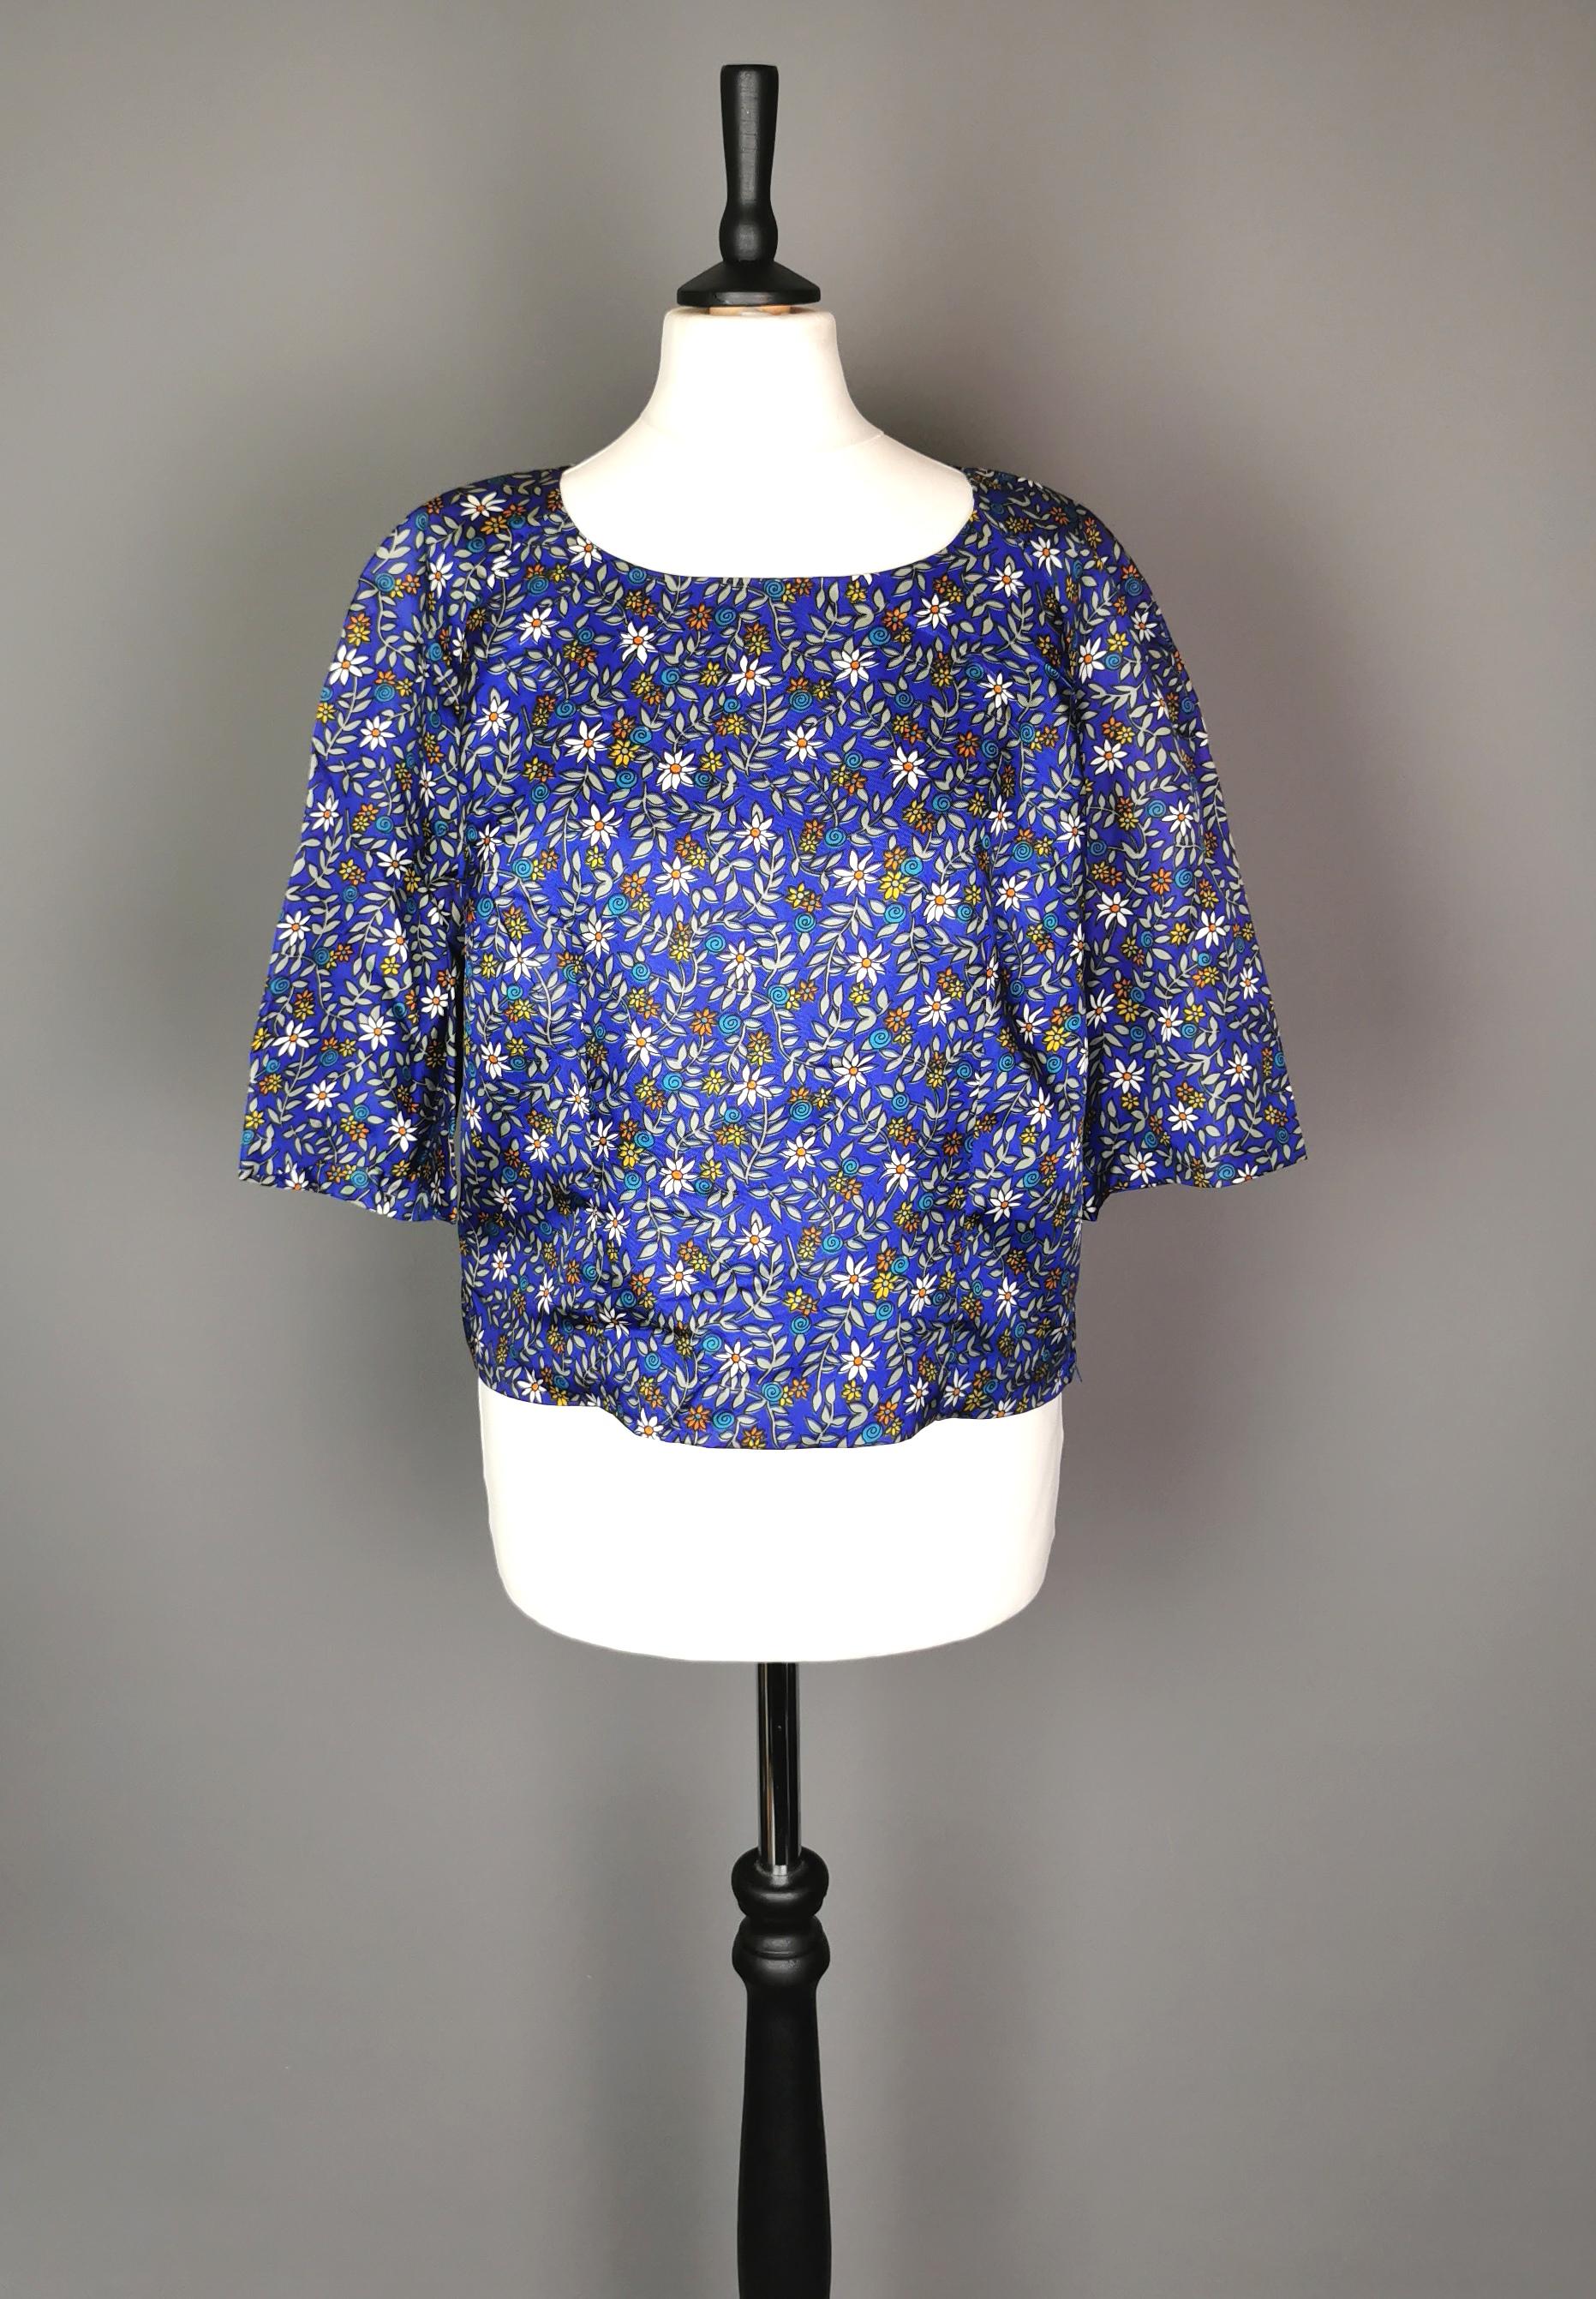 Eine wunderschöne Flower-Power-Bluse aus den 1960er Jahren.

Es ist kurz und leicht tailliert geschnitten, hat kurze Ärmel und einen runden Rundhalsausschnitt.

Die Bluse hat einen dunklen kobaltblauen Grund mit einem floralen Allover-Druck.

Es ist